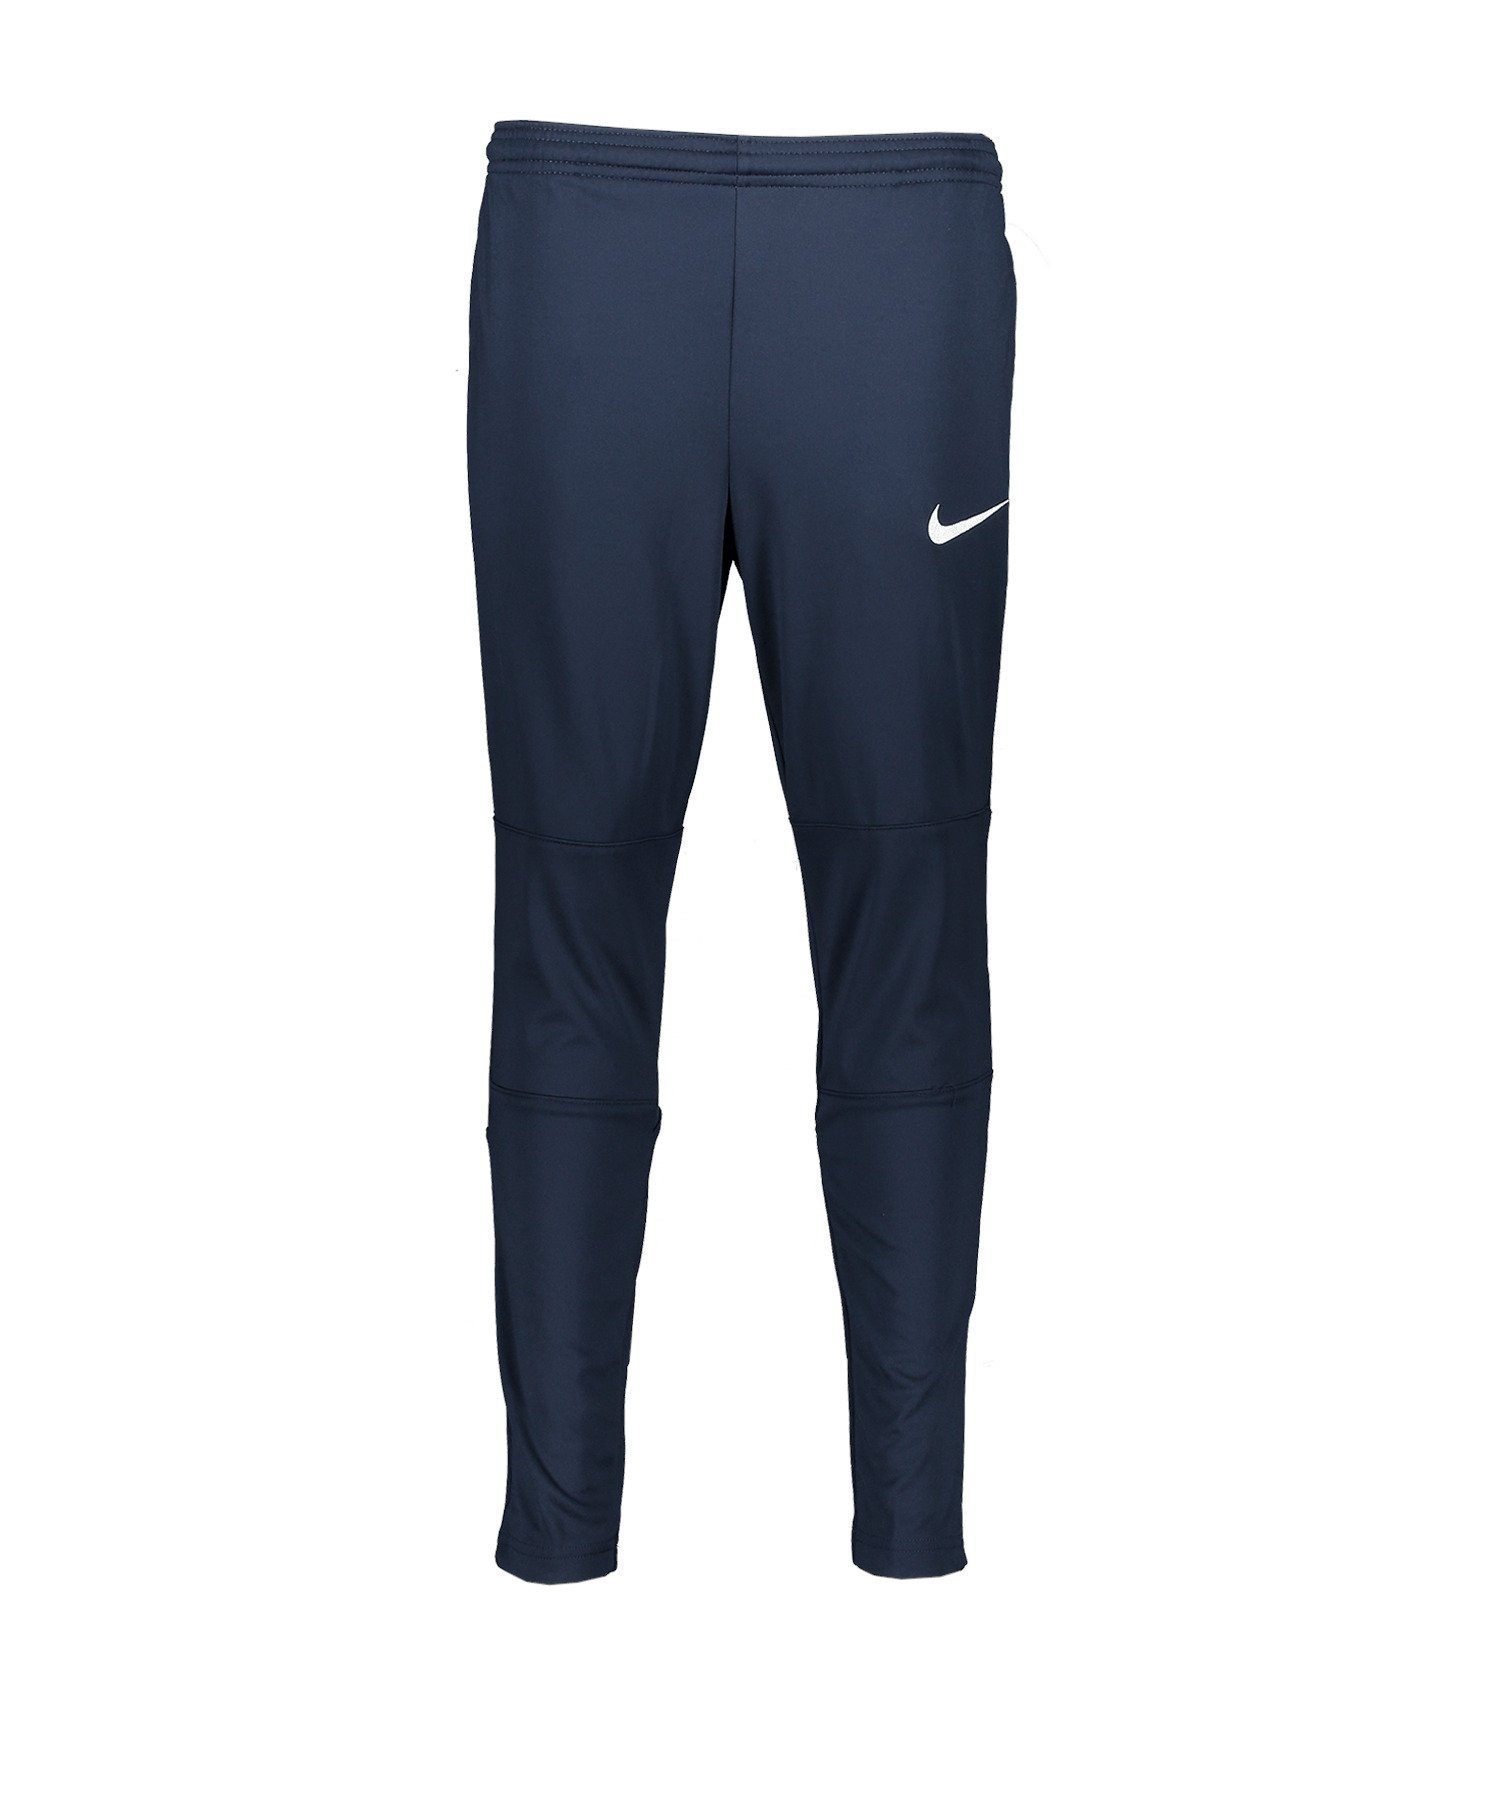 Nike Sporthose Park 20 Training Hose Pant K blau